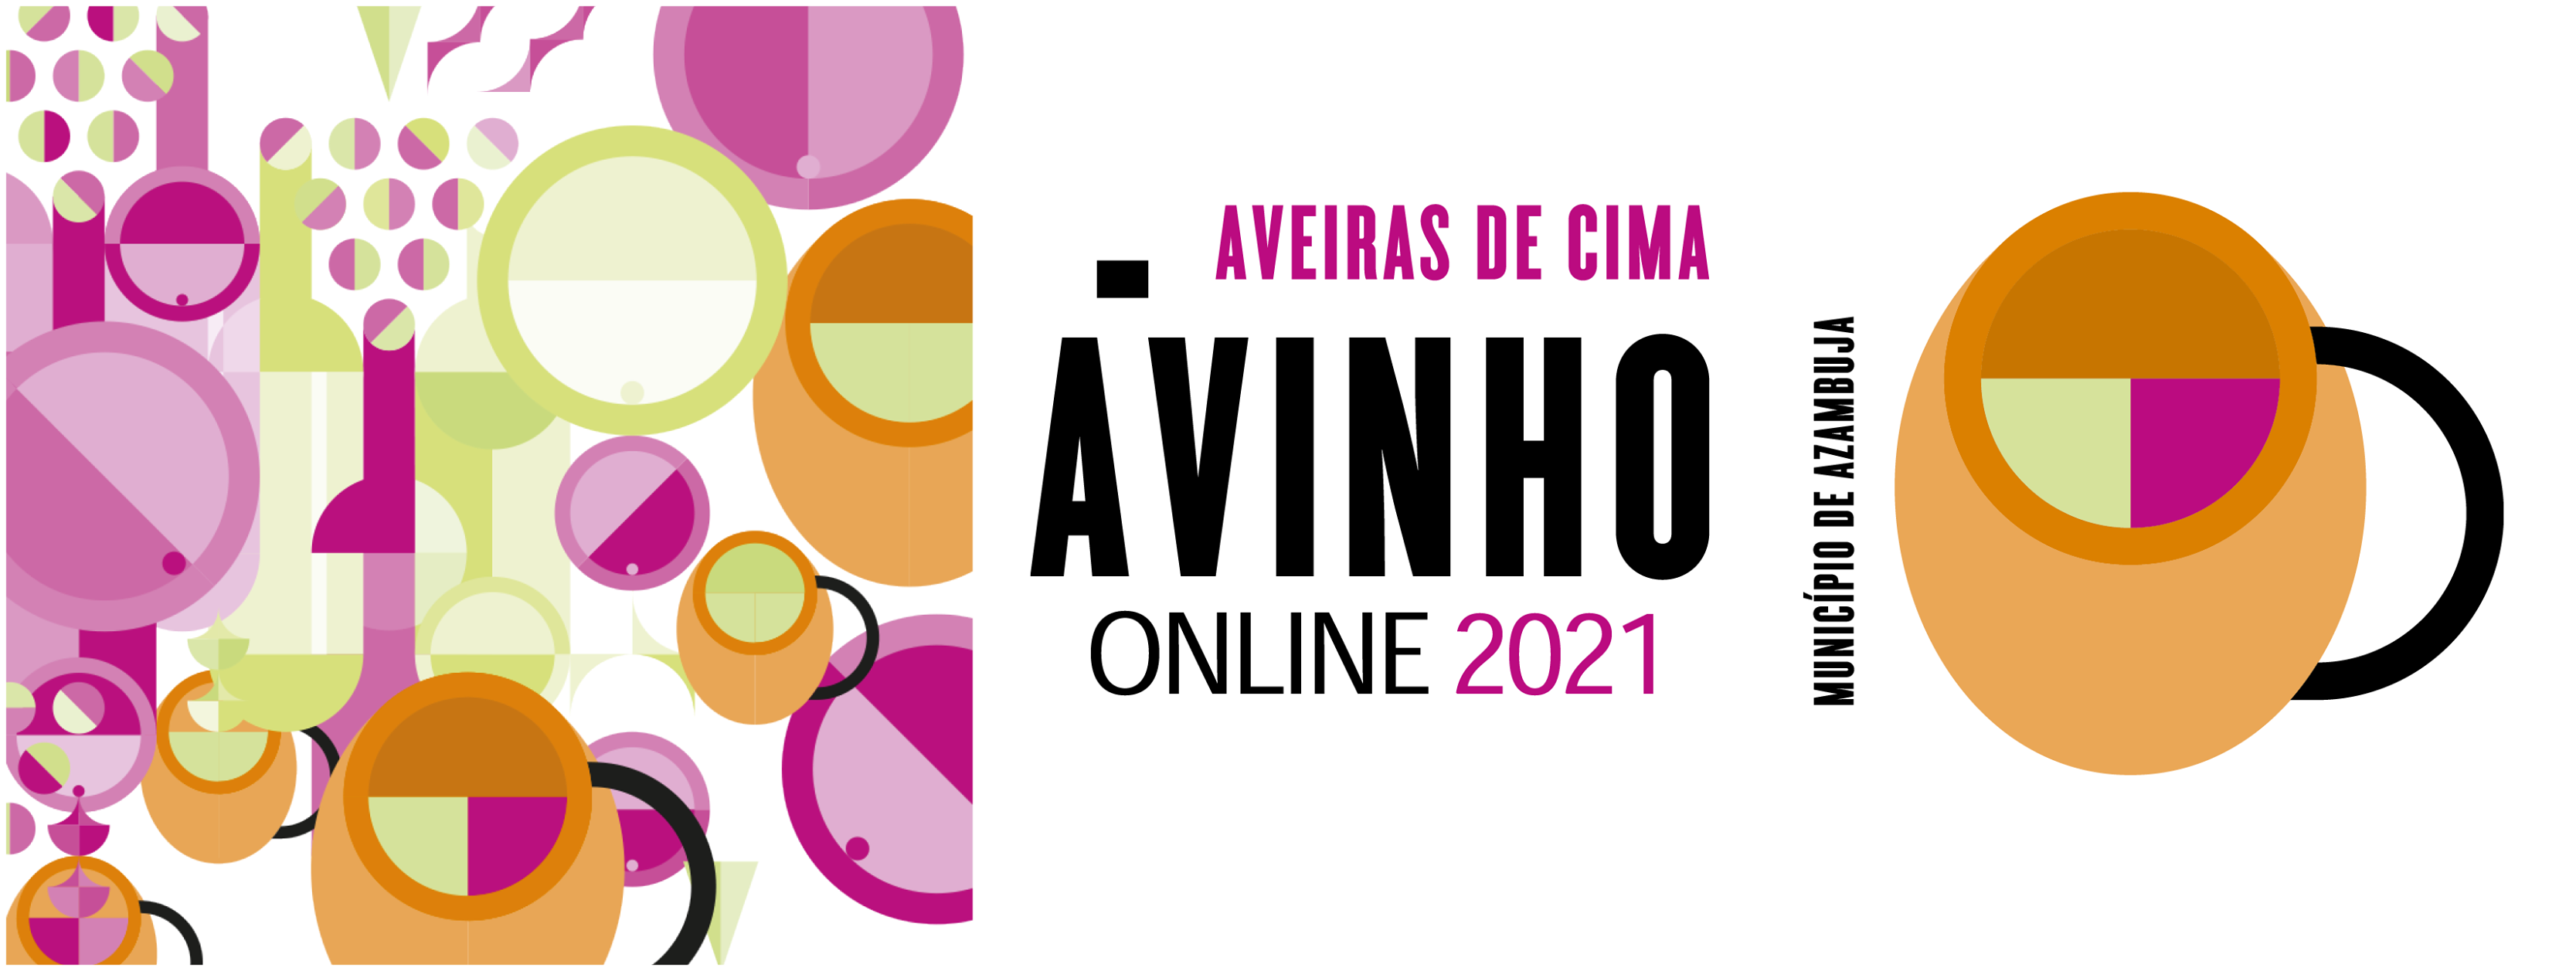 Ávinho 2021 - ONLINE